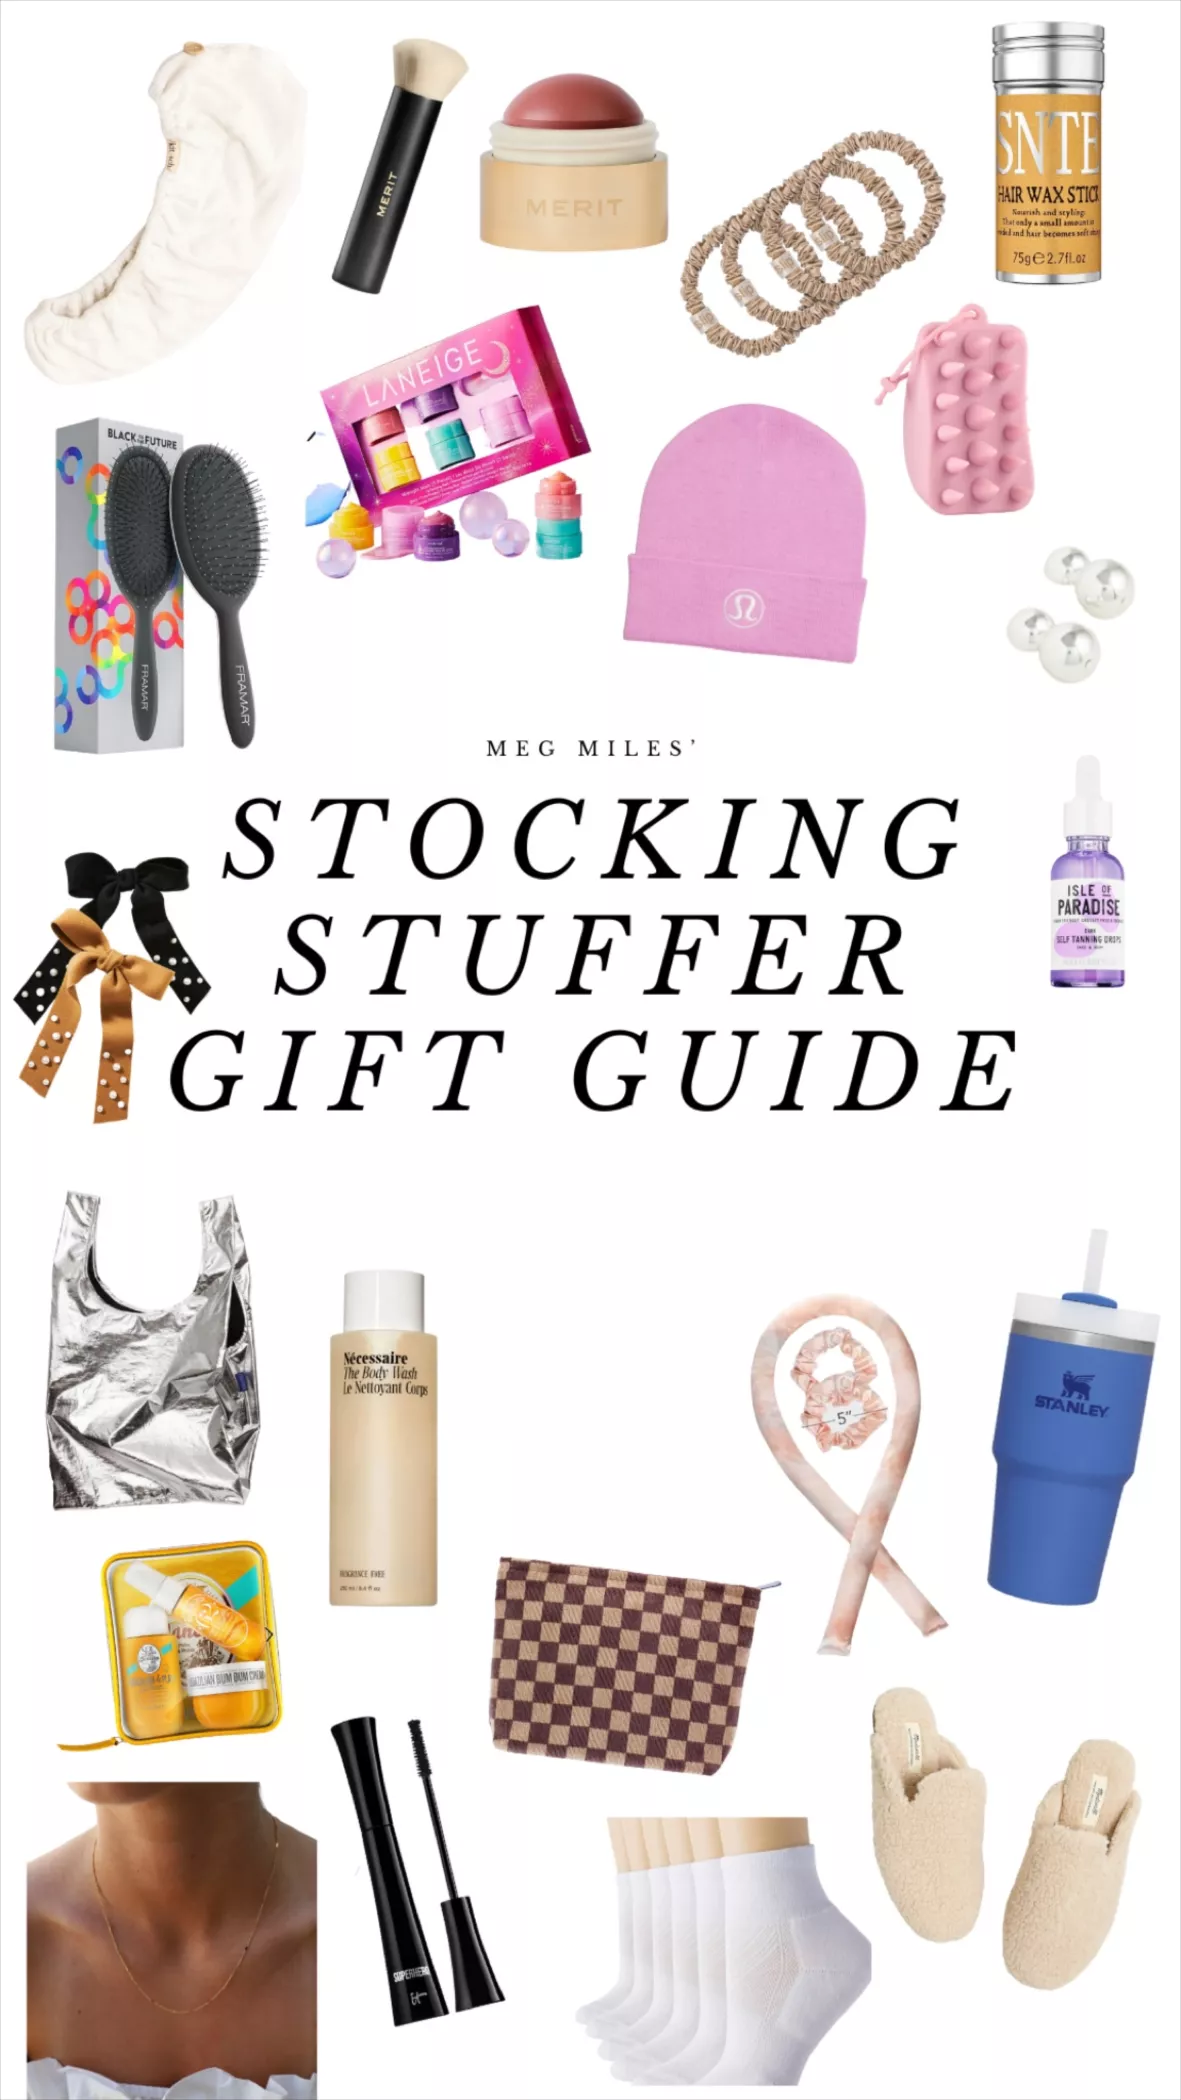 DisneyMoms's Gift Guide Gift Guide on LTK